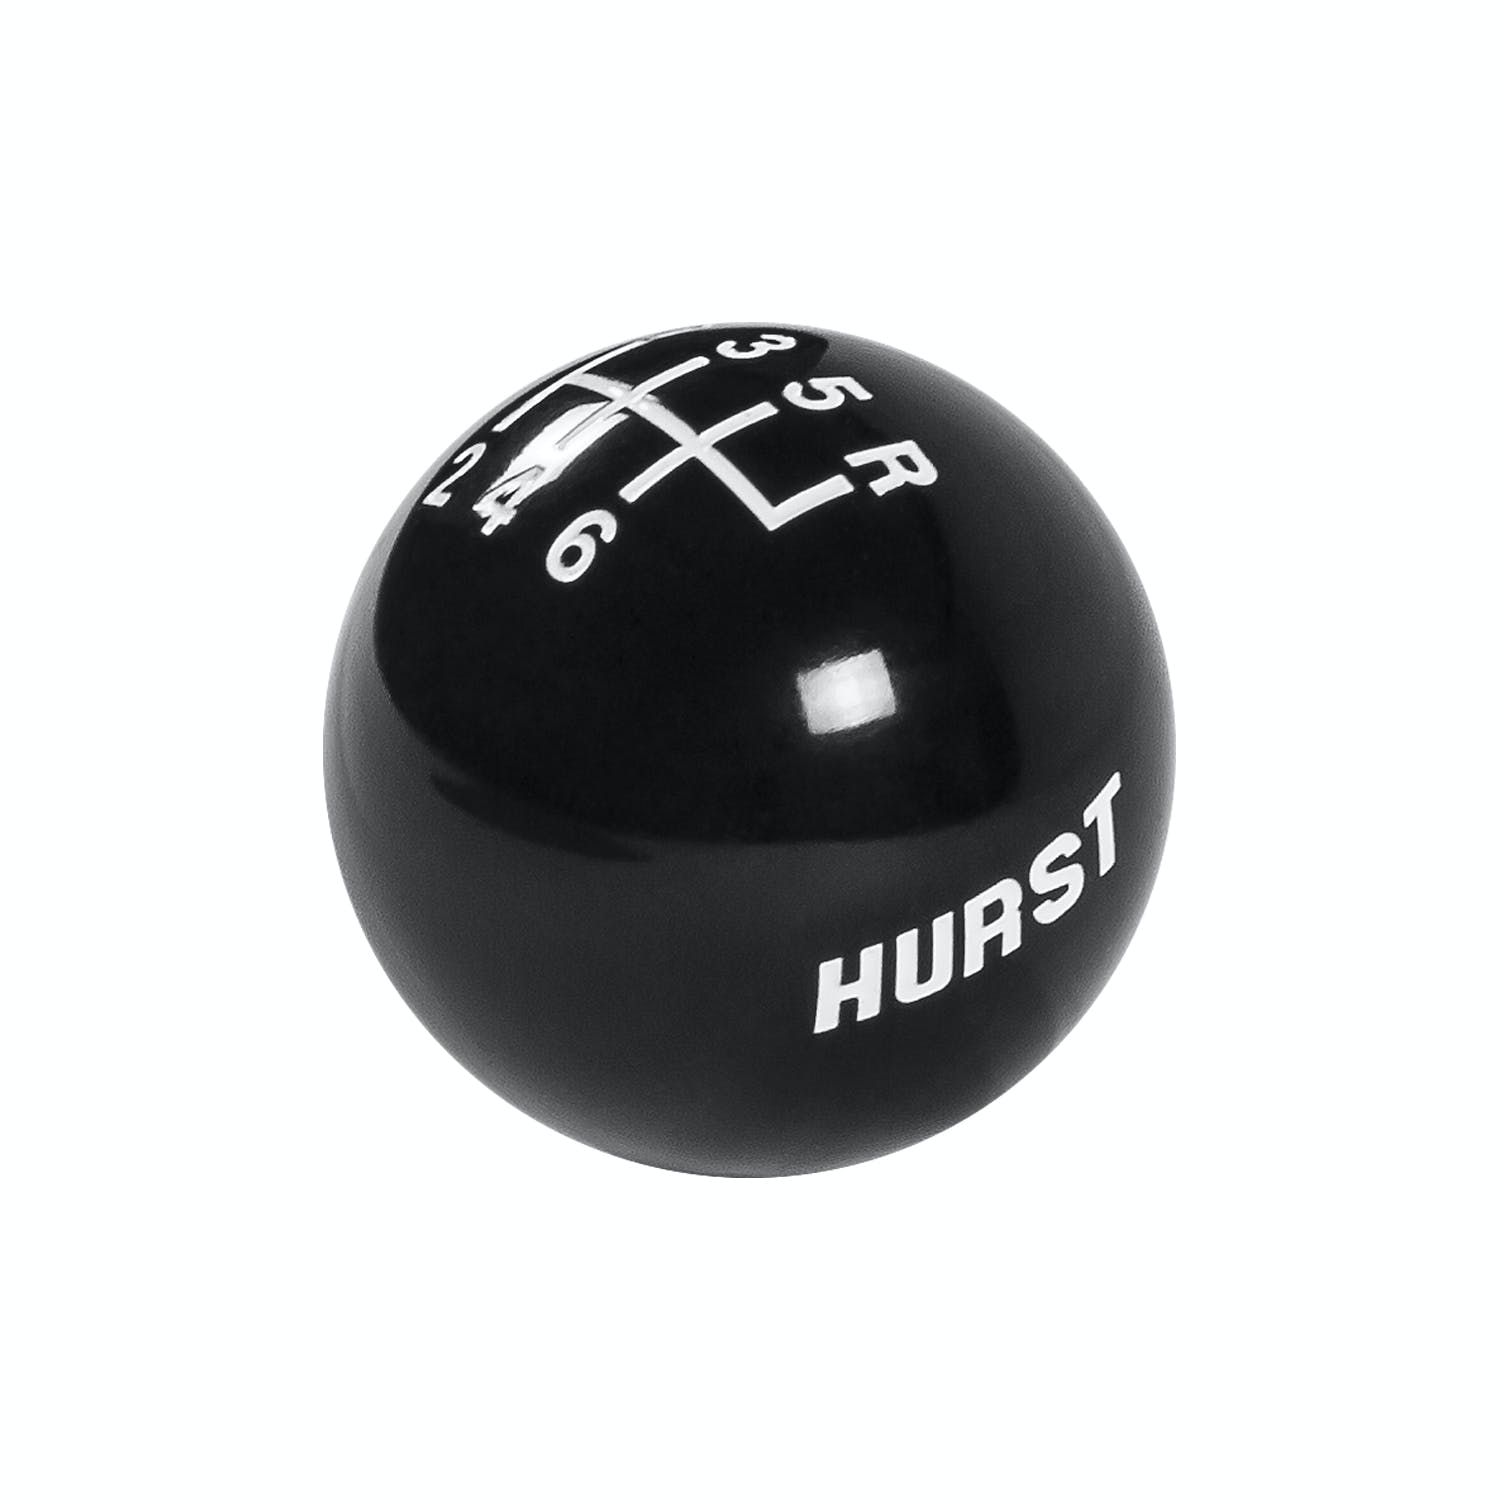 Hurst 1631040 HURST BLACK KNOB 3/8-16, 6-SPEED w/LOGO